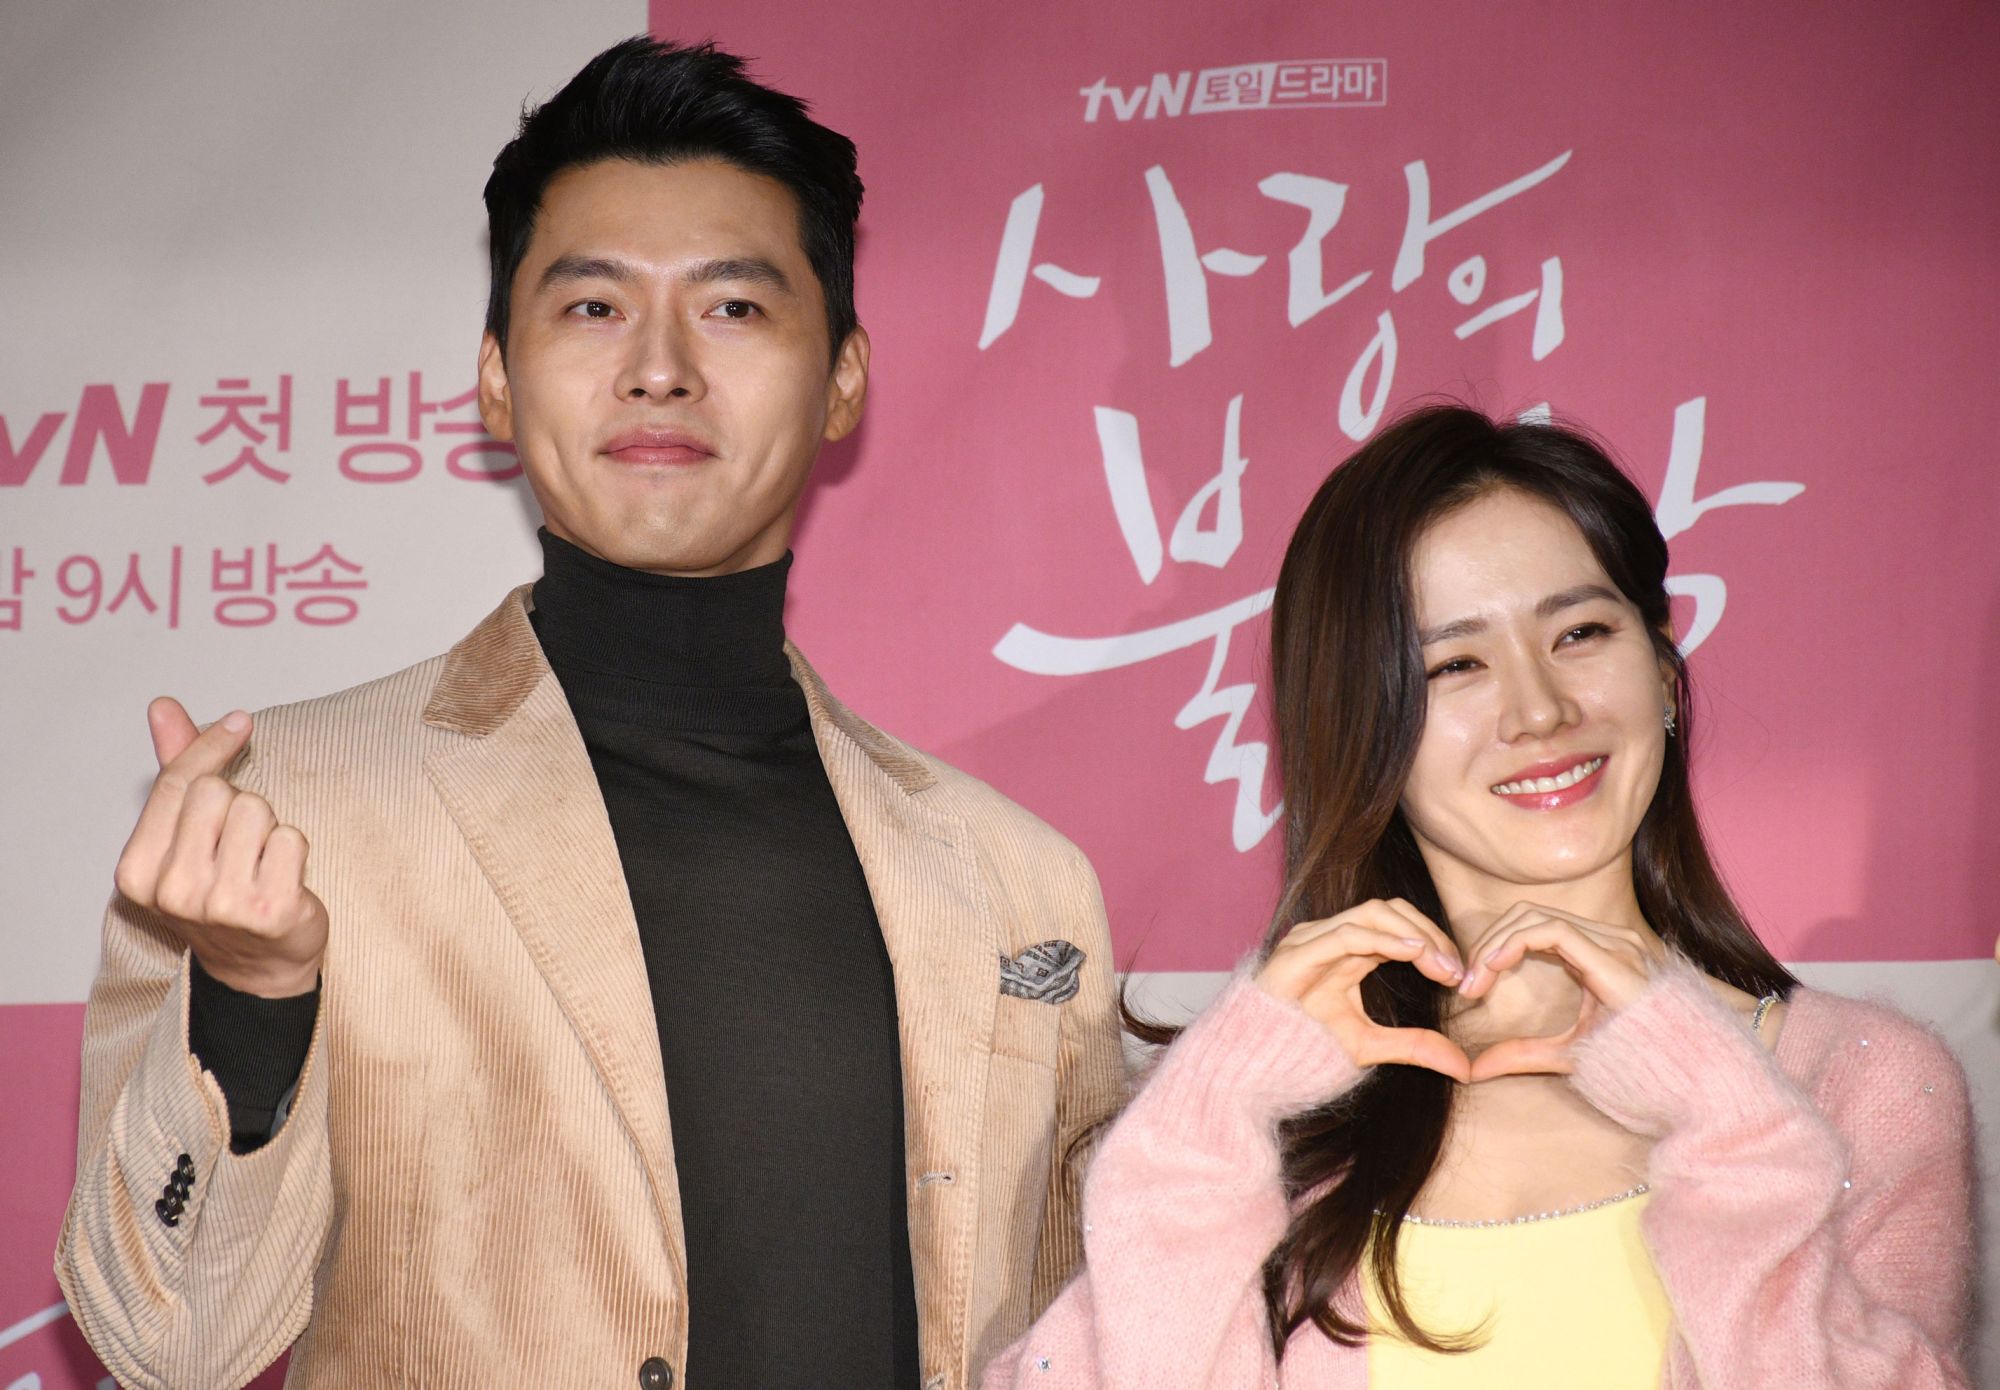 K-Drama Crash Landing On You Co-Stars Engaged